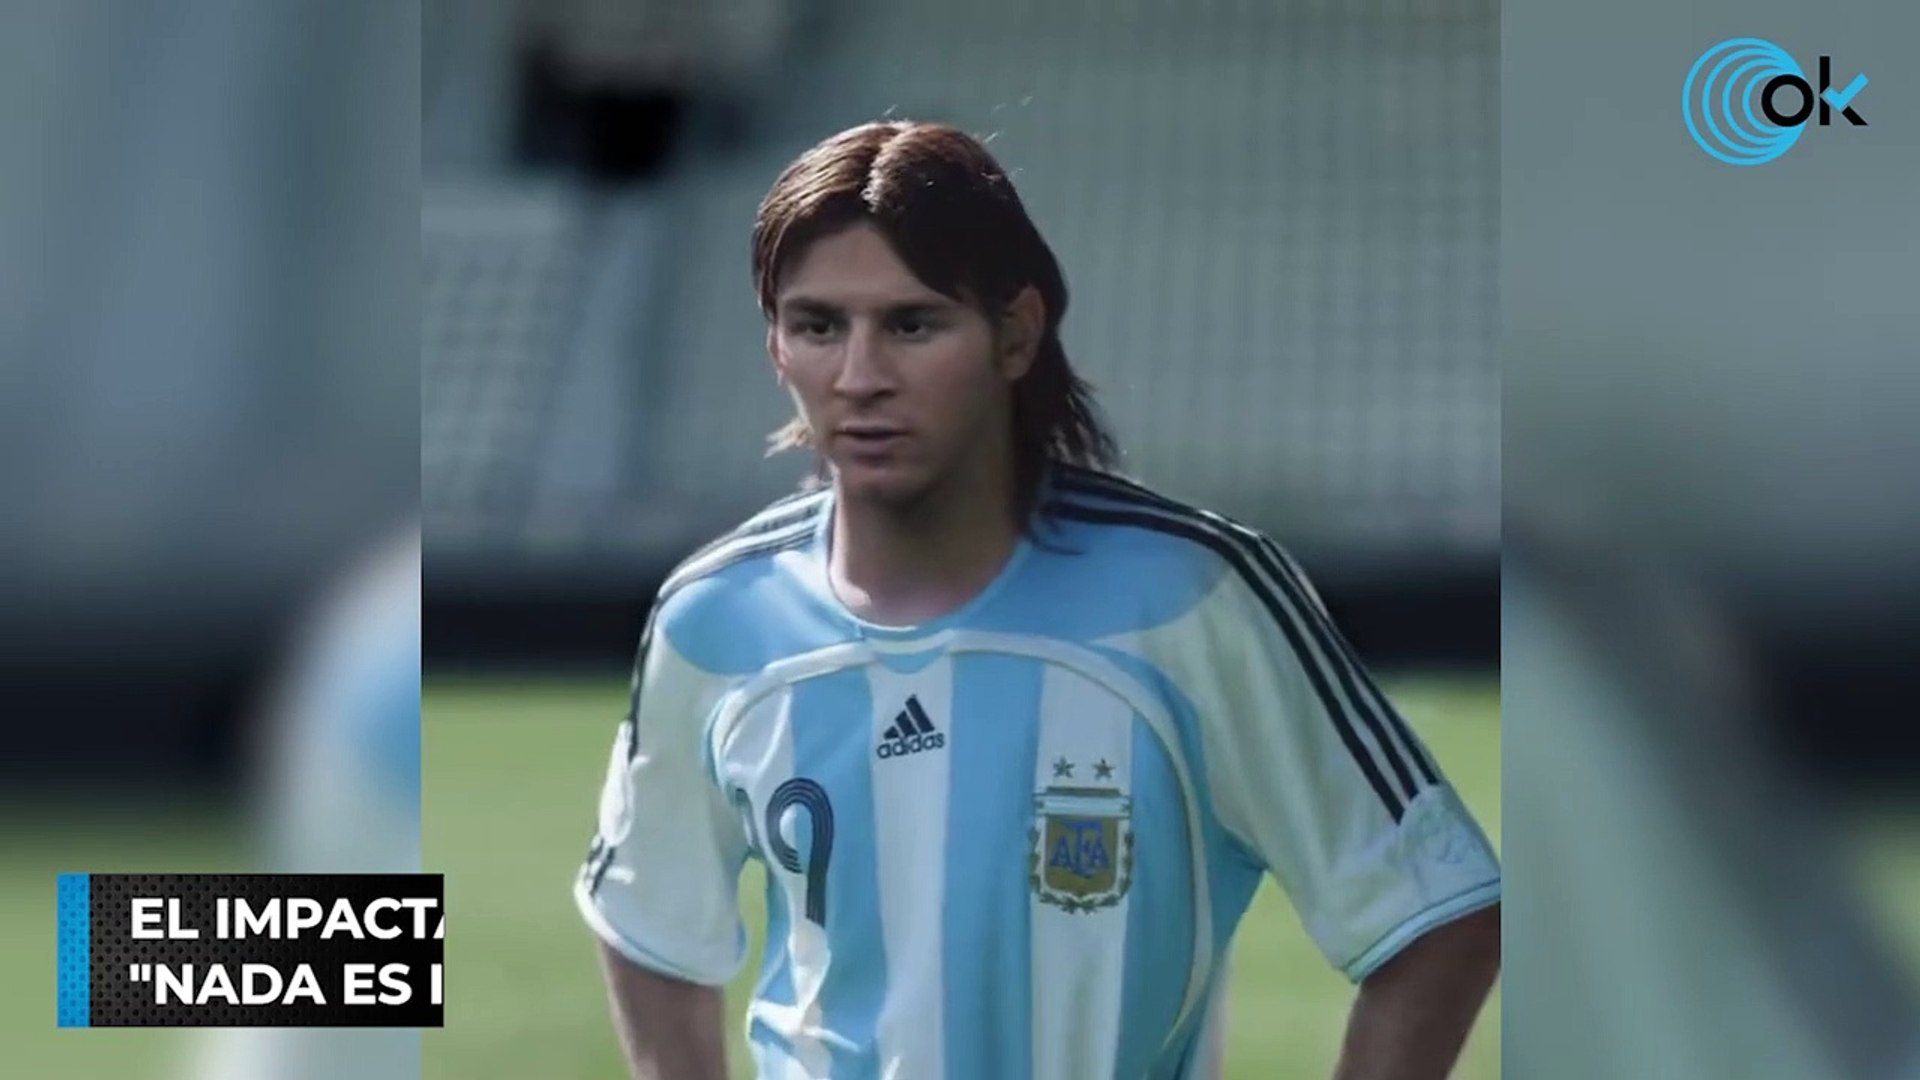 El impactante anuncio de Adidas dedicado a Messi: "Nada es imposible" -  Vídeo Dailymotion